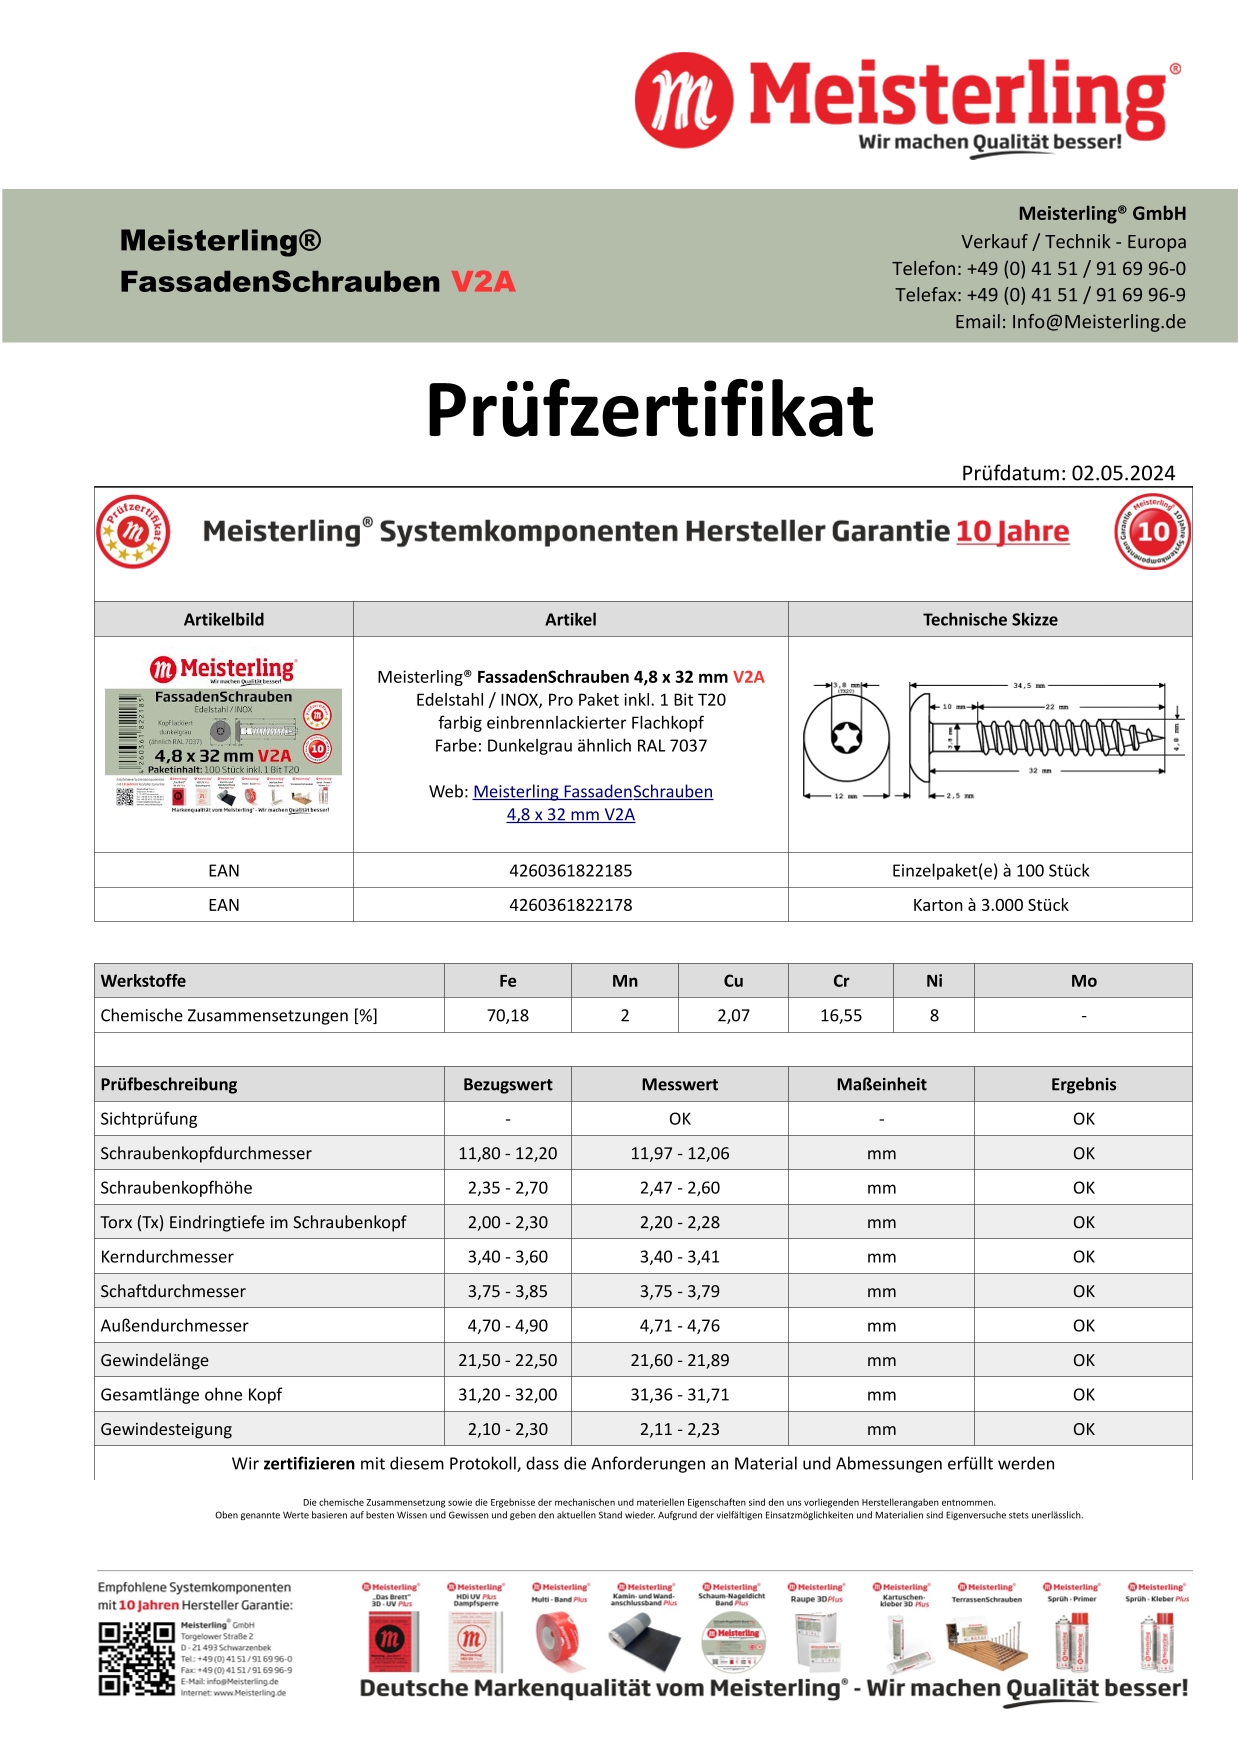 Prüfzertifikat Meisterling® FassadenSchrauben 4,8 x 32 mm V2a dunkelgrau